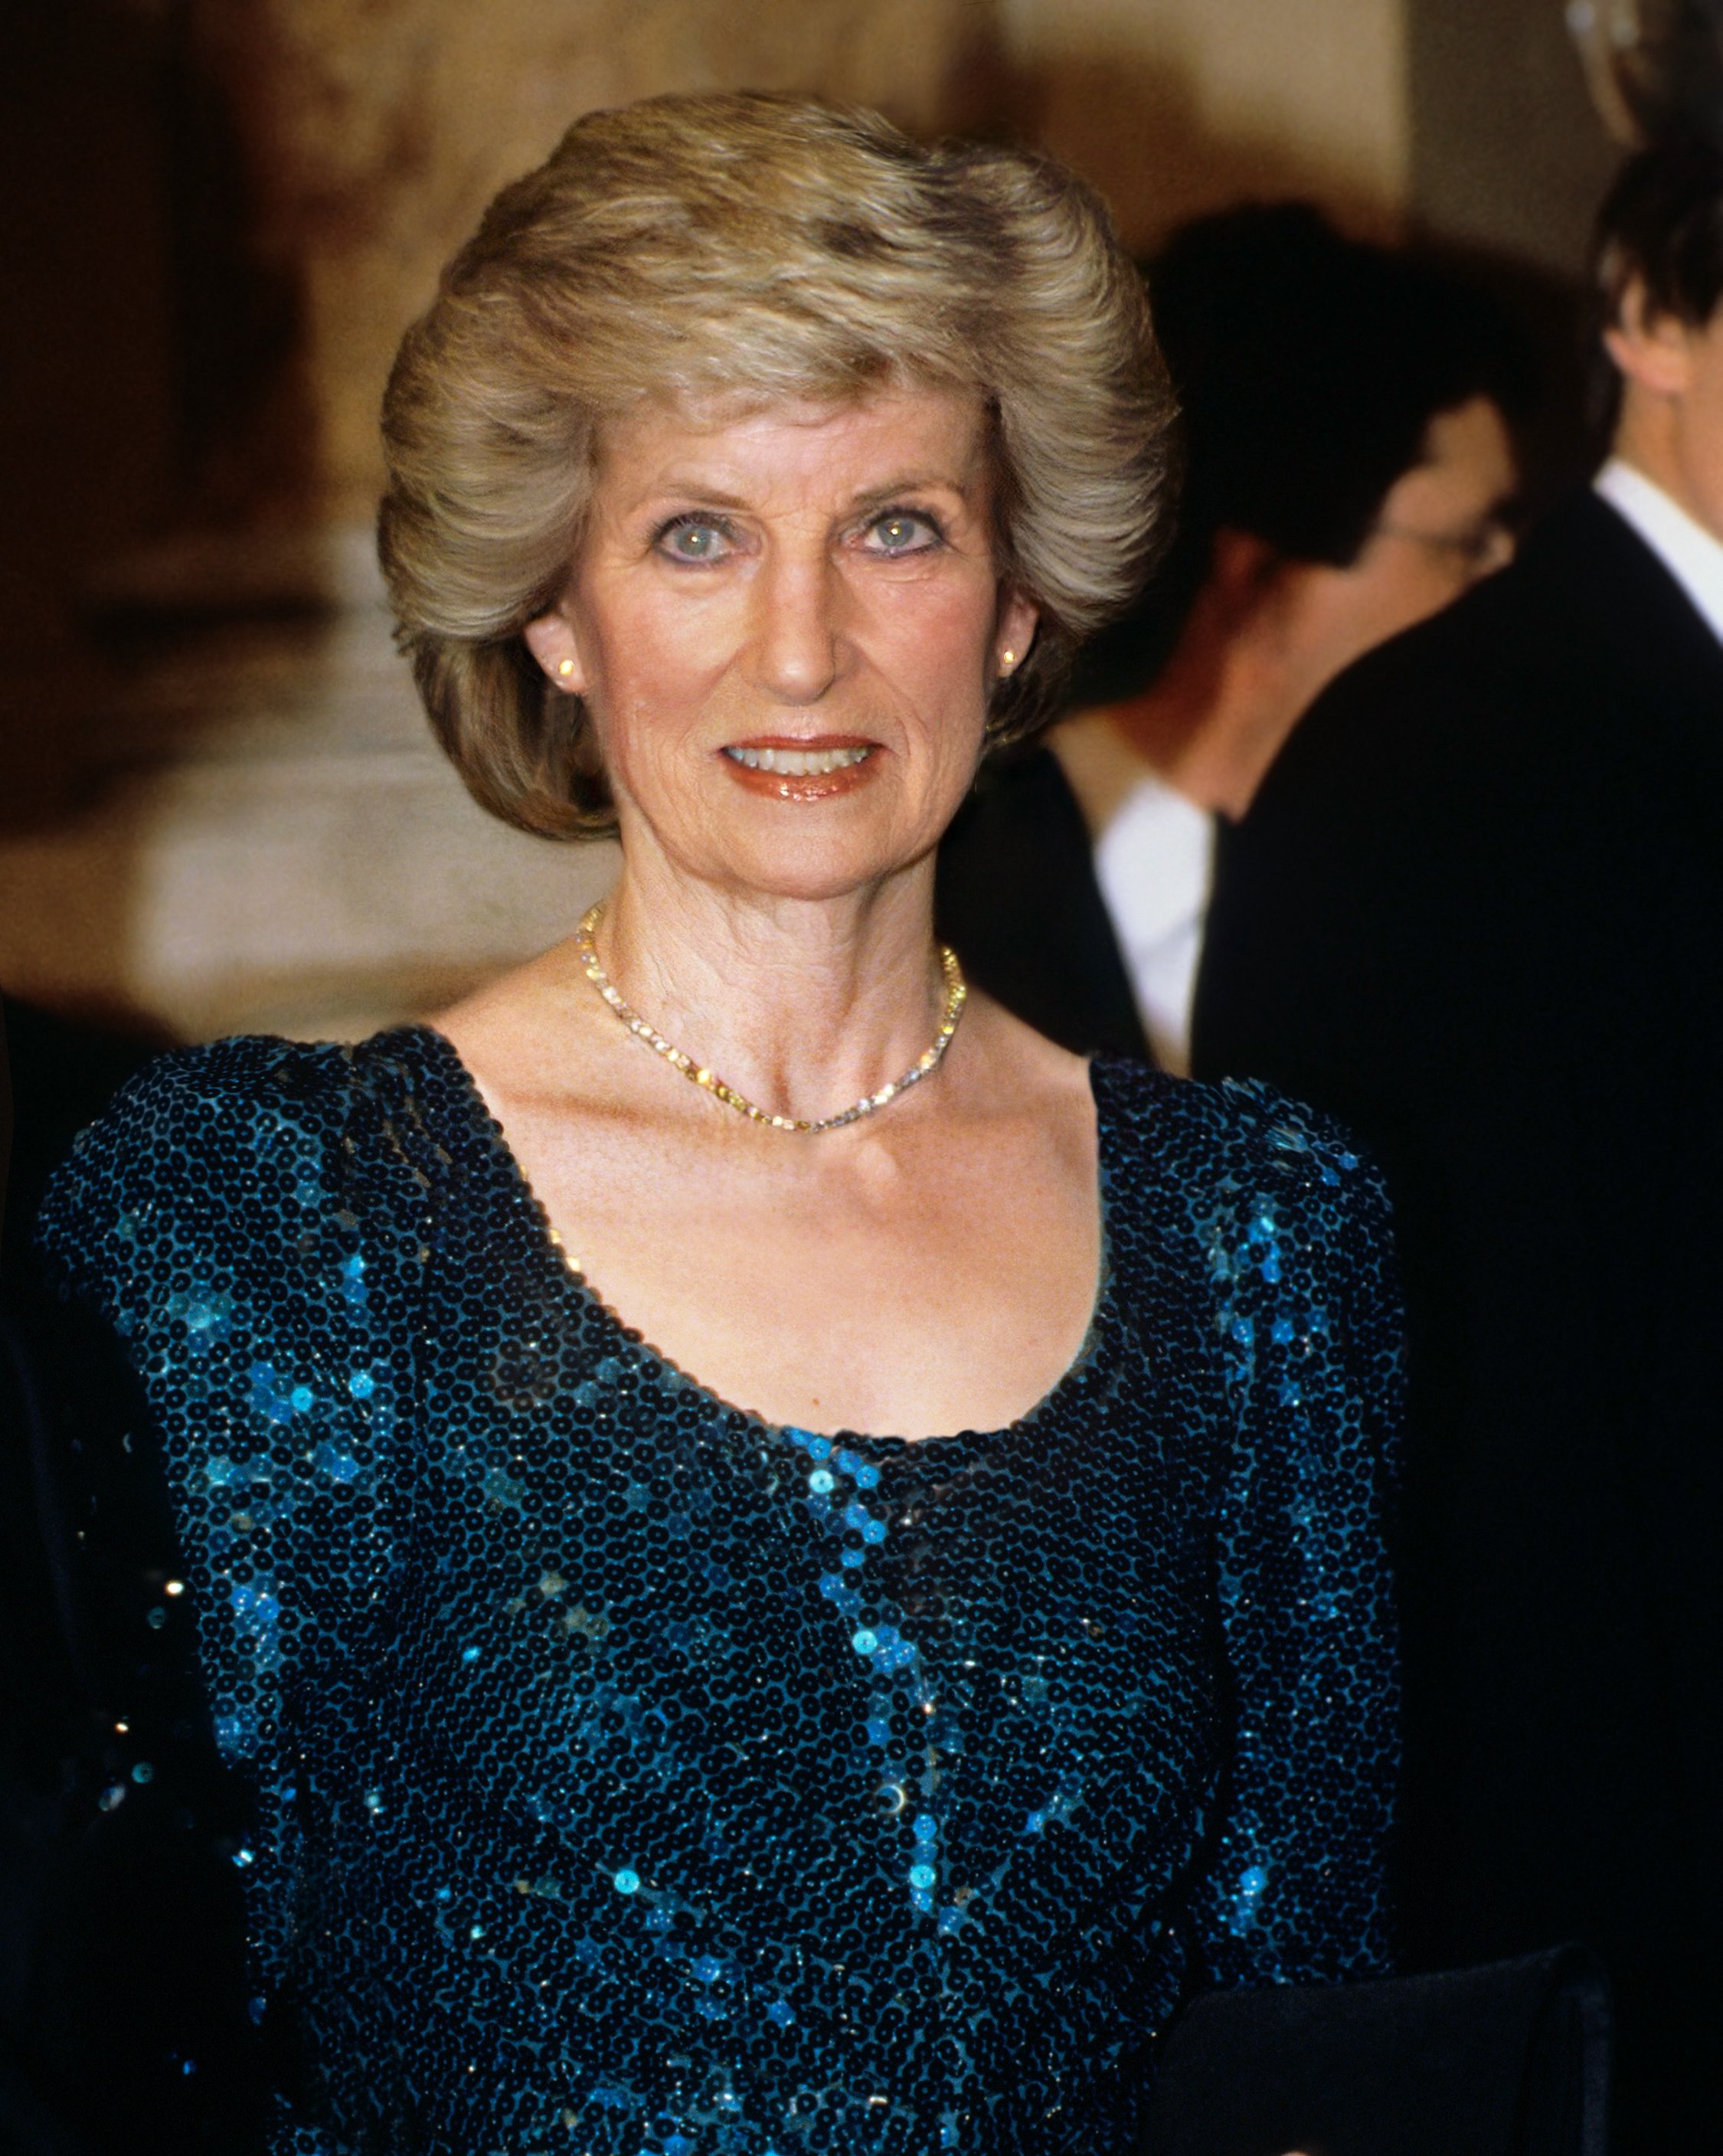 Schätzung, wie Prinzessin Diana mit 59 ausgesehen hätte| Quelle: Getty Images